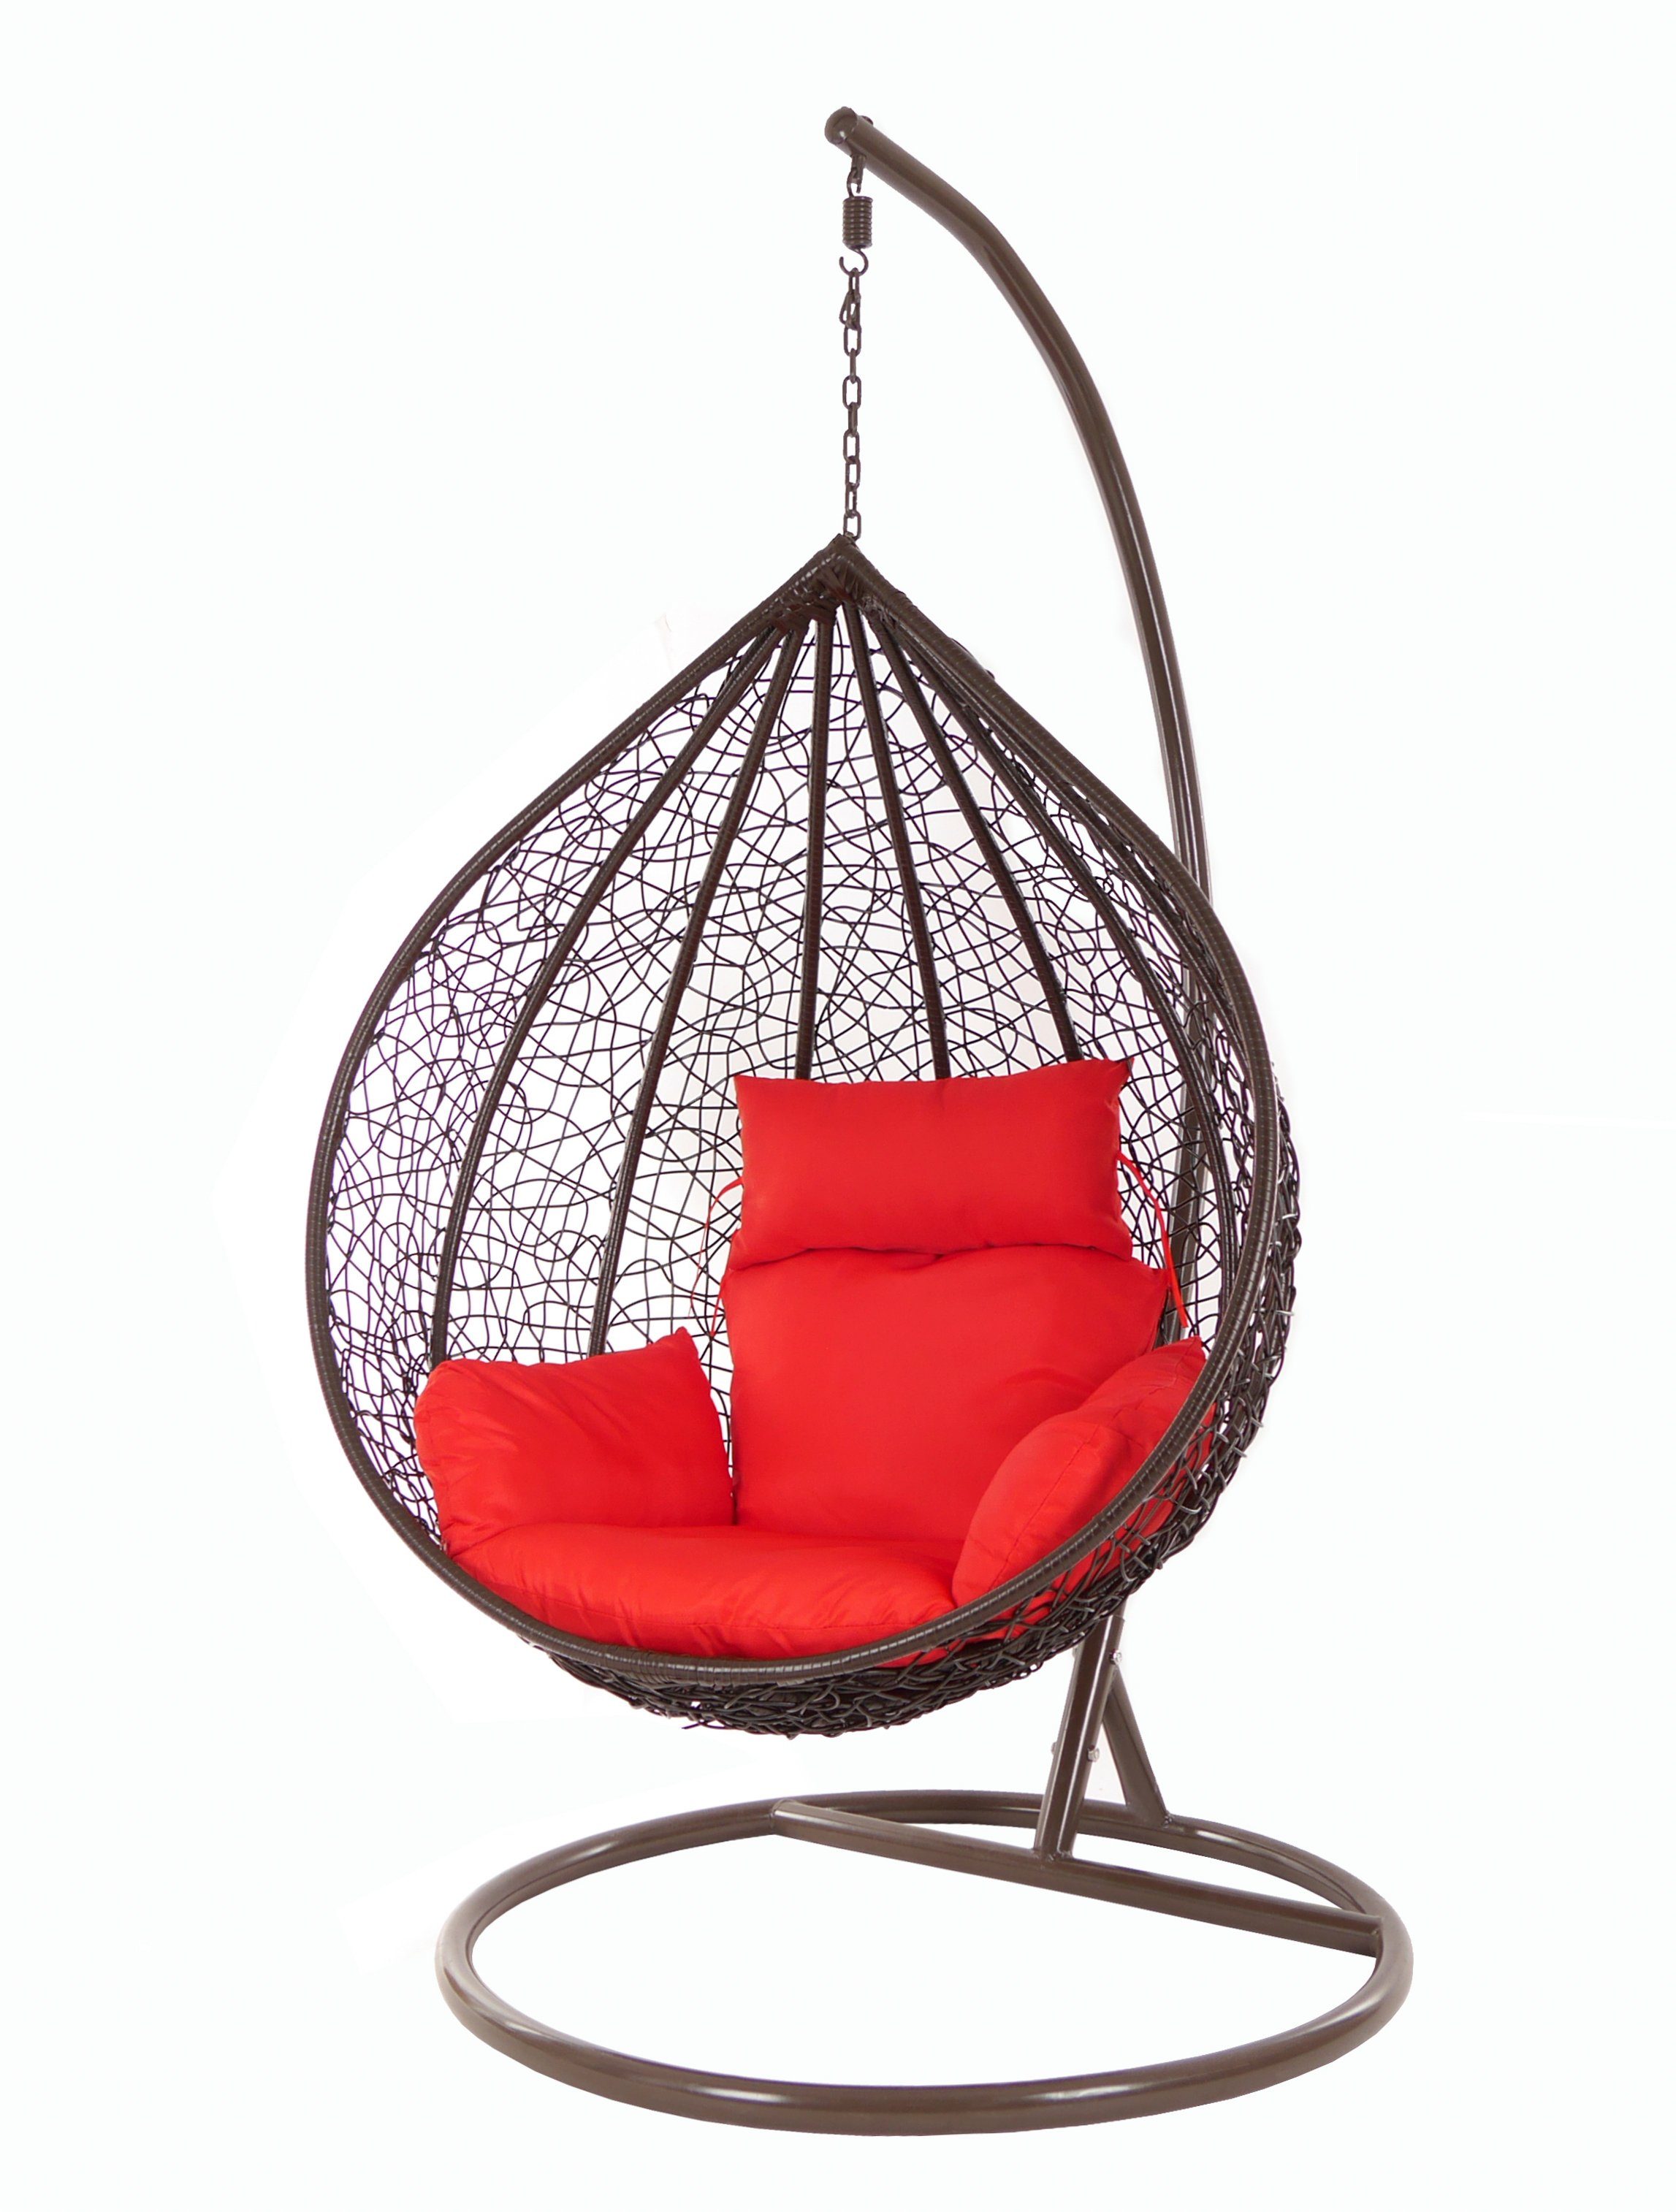 KIDEO Hängesessel Hängesessel Chair, Schwebesessel, Kissen Gestell MANACOR braun, mit scarlet) (3050 und darkbrown, Swing Hängesessel rot